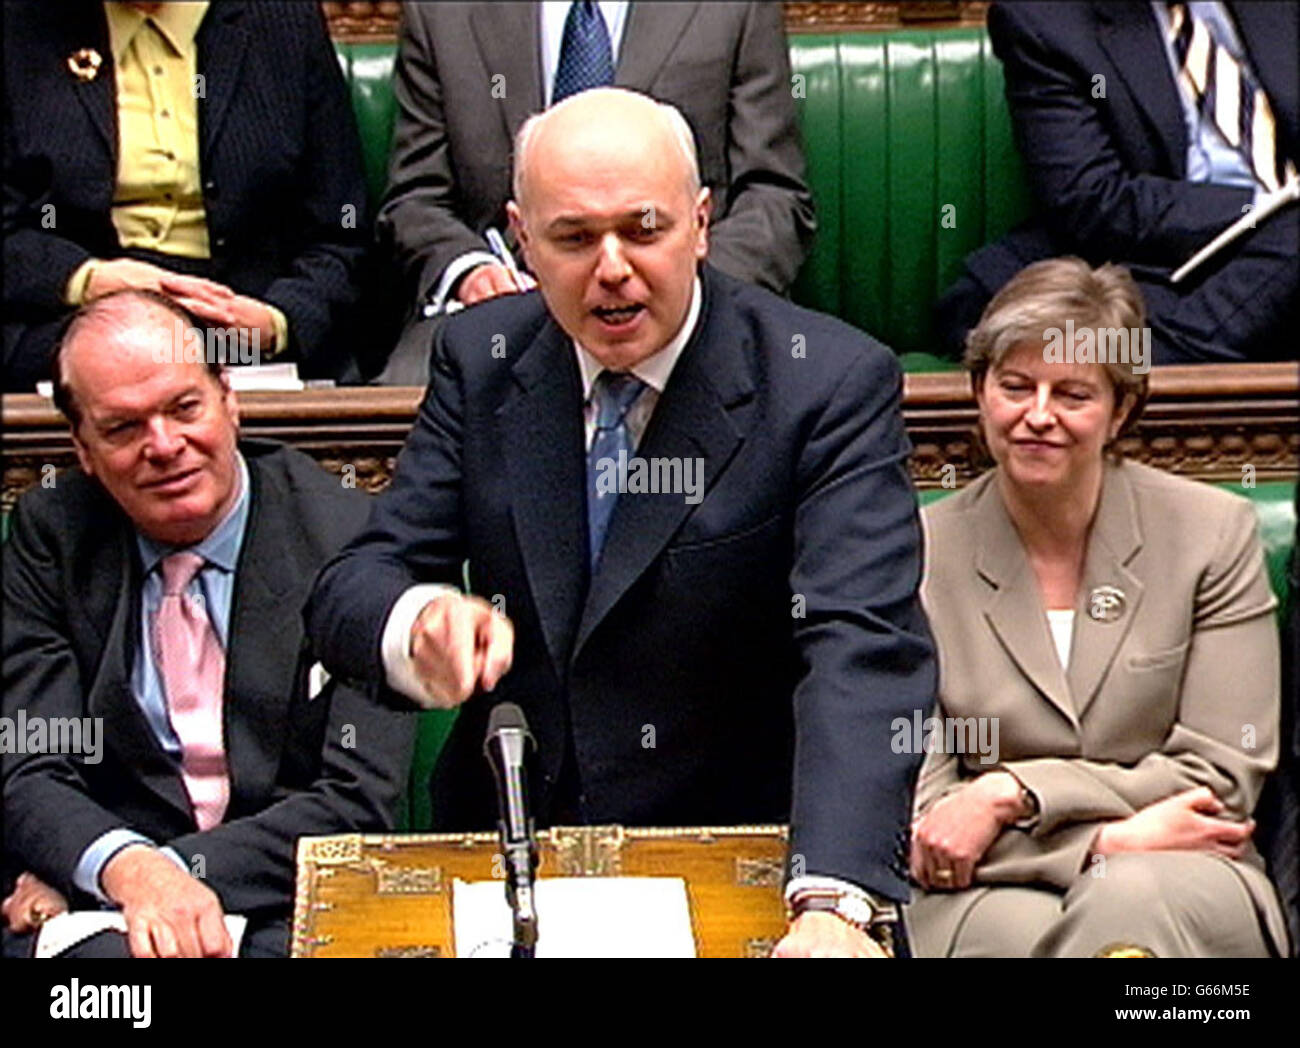 Le chef de l'opposition, Iain Duncan Smith, a parlé pendant les questions du premier ministre à la Chambre des communes, à Londres. Banque D'Images